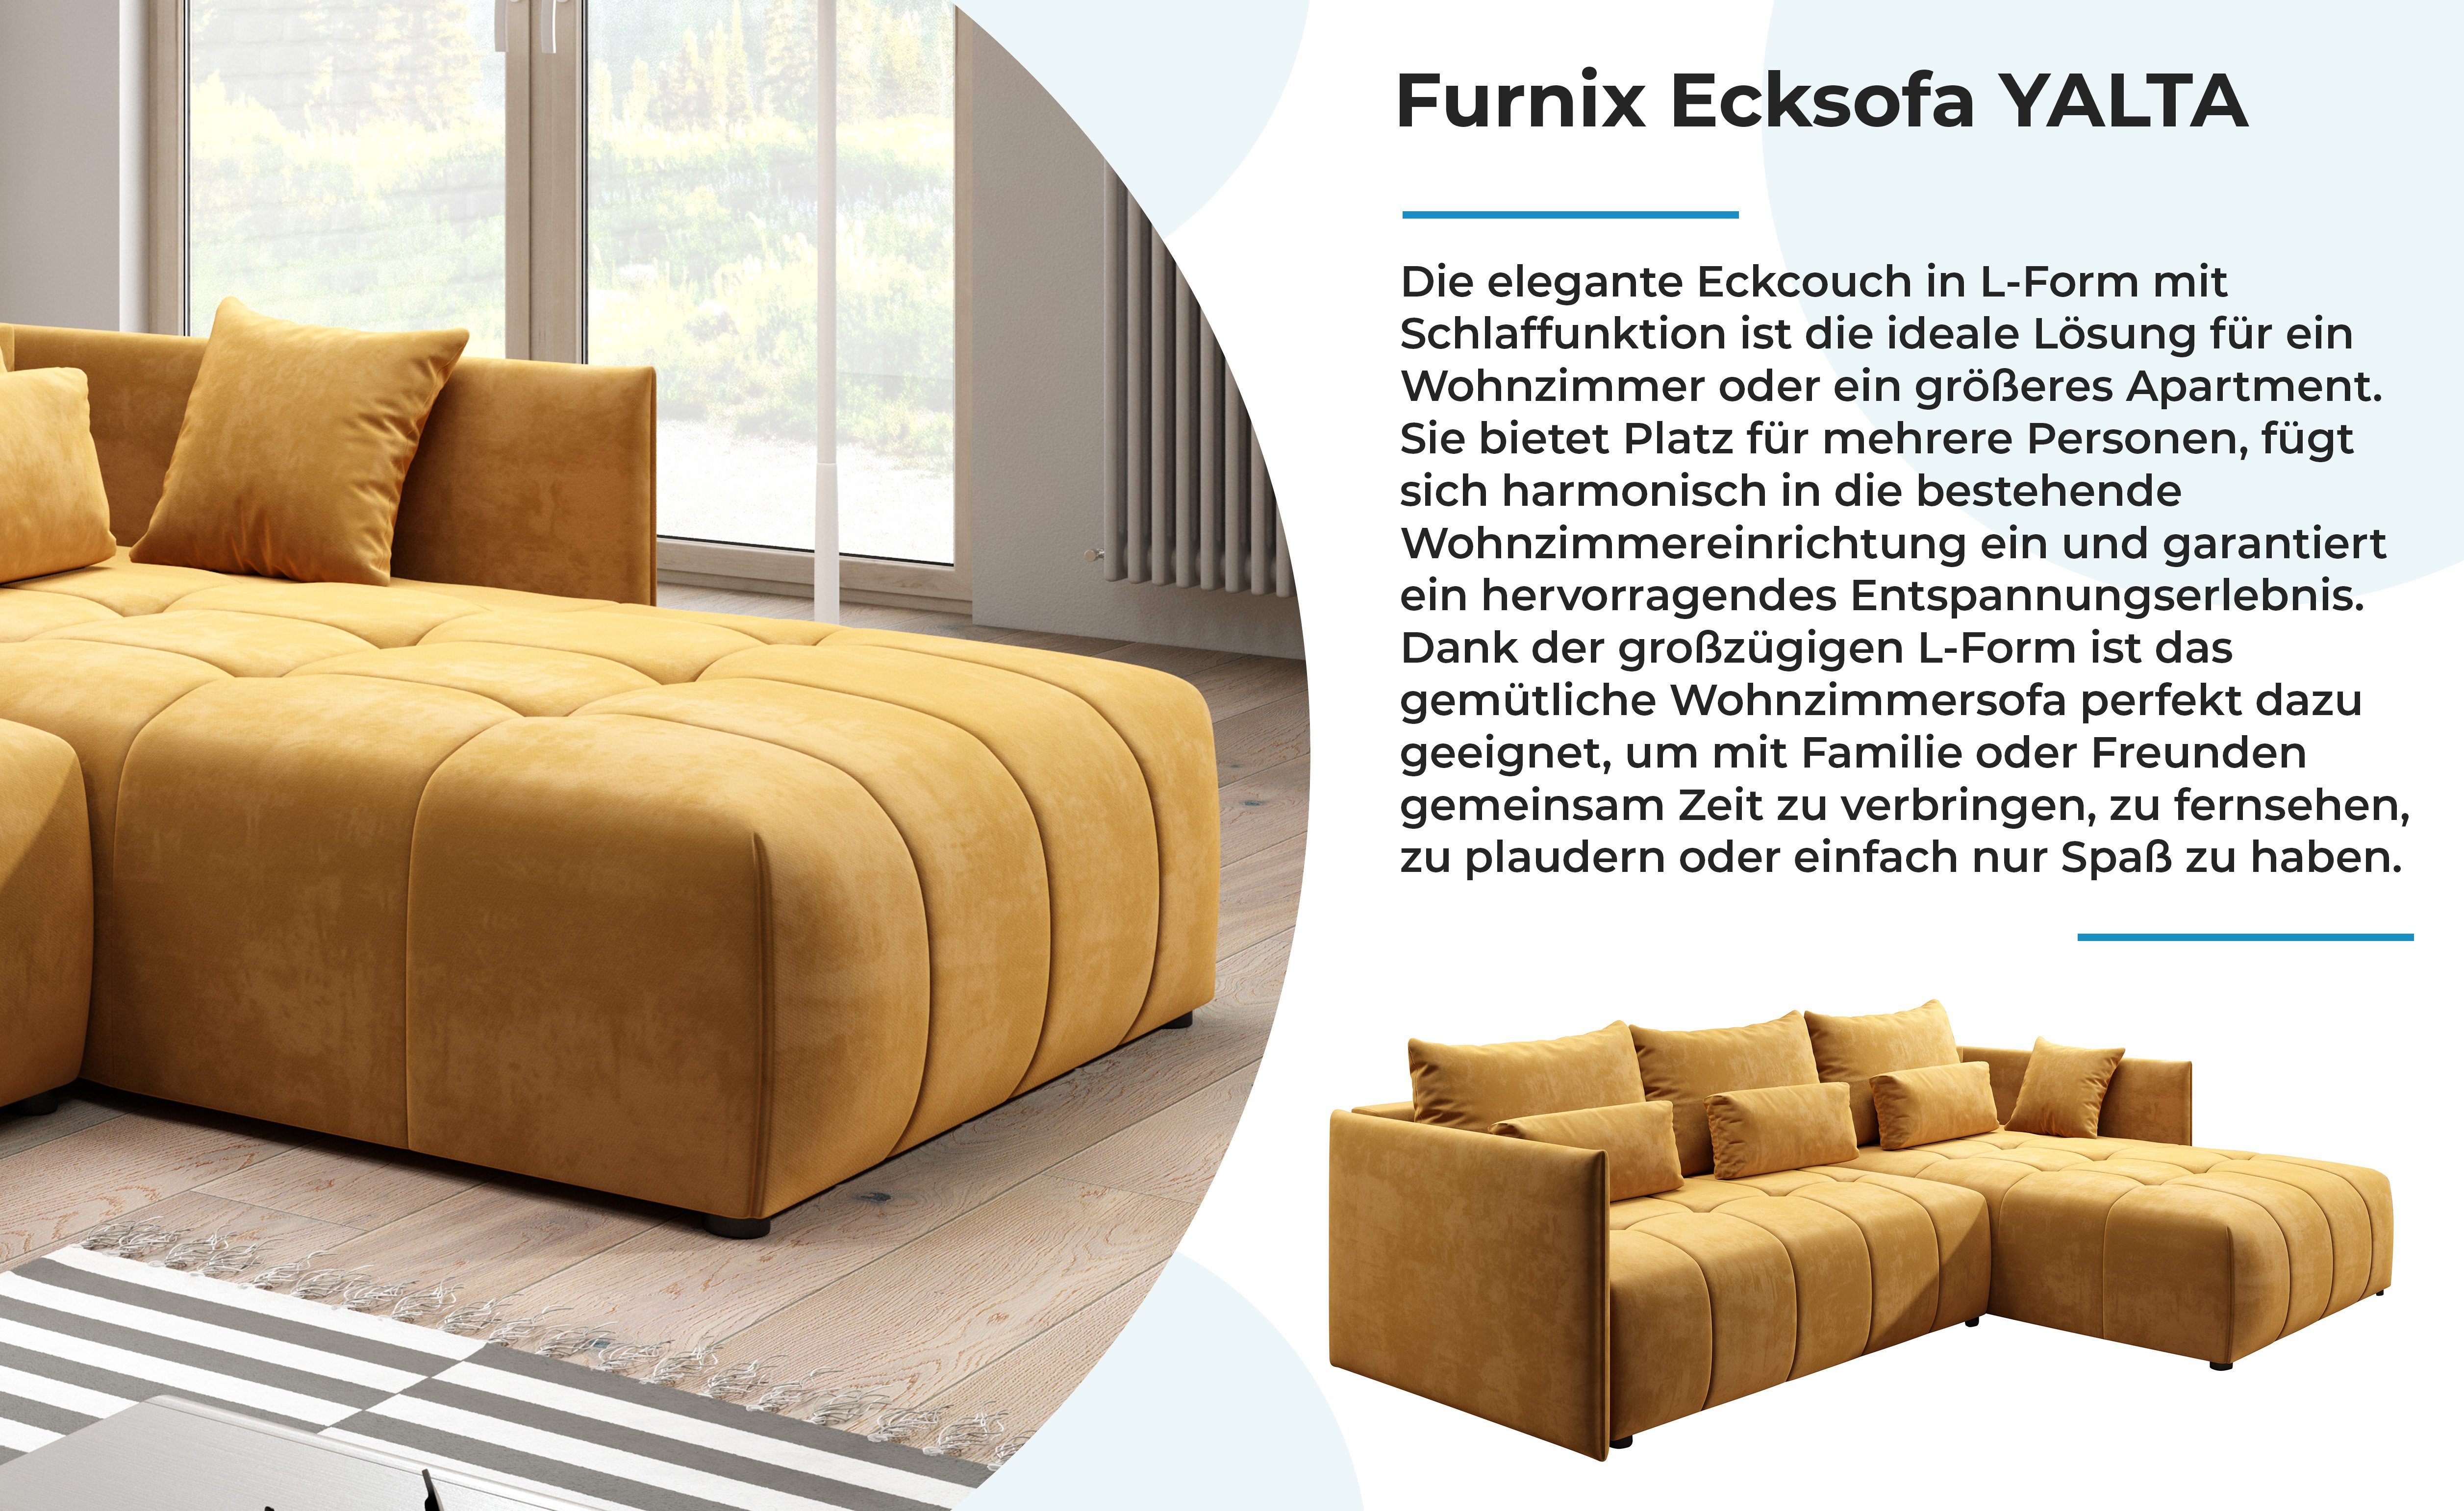 Furnix und KR Ecksofa Bettkasten Made Europe Schlafsofa Braun-Gold YALTA mit Couch 01 Kissen, ausziehbar in